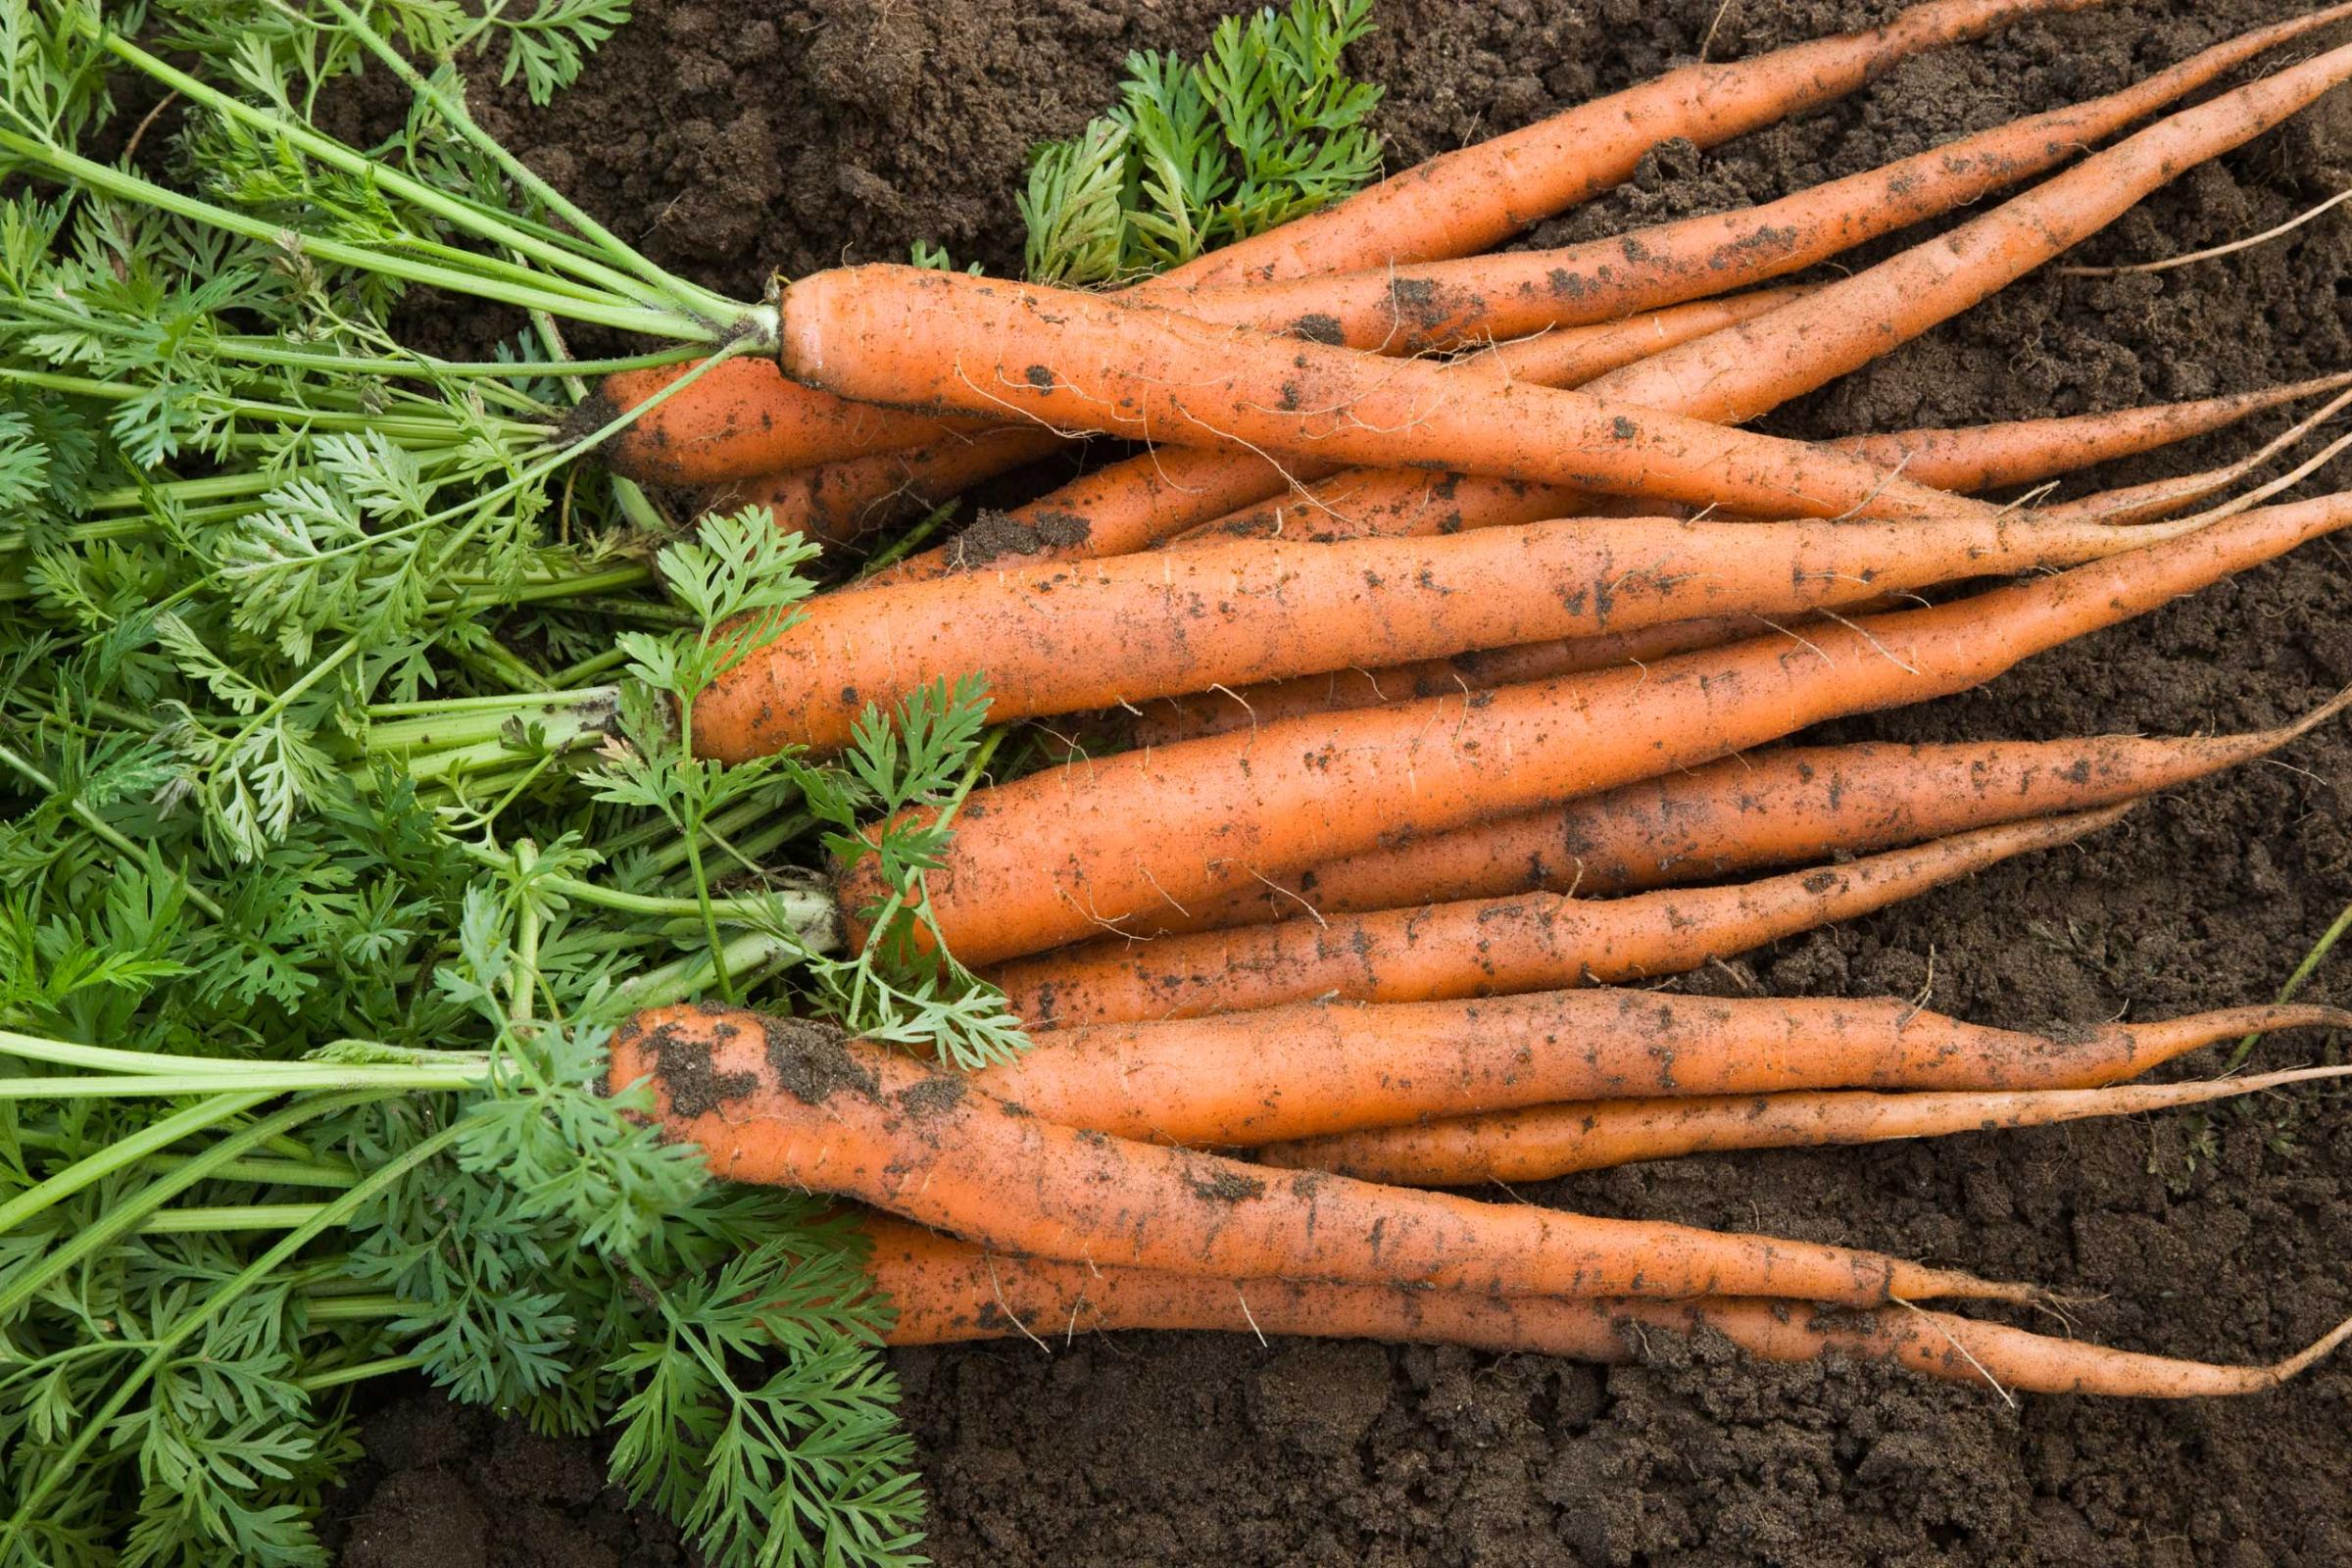 Harvested carrots lying in soil